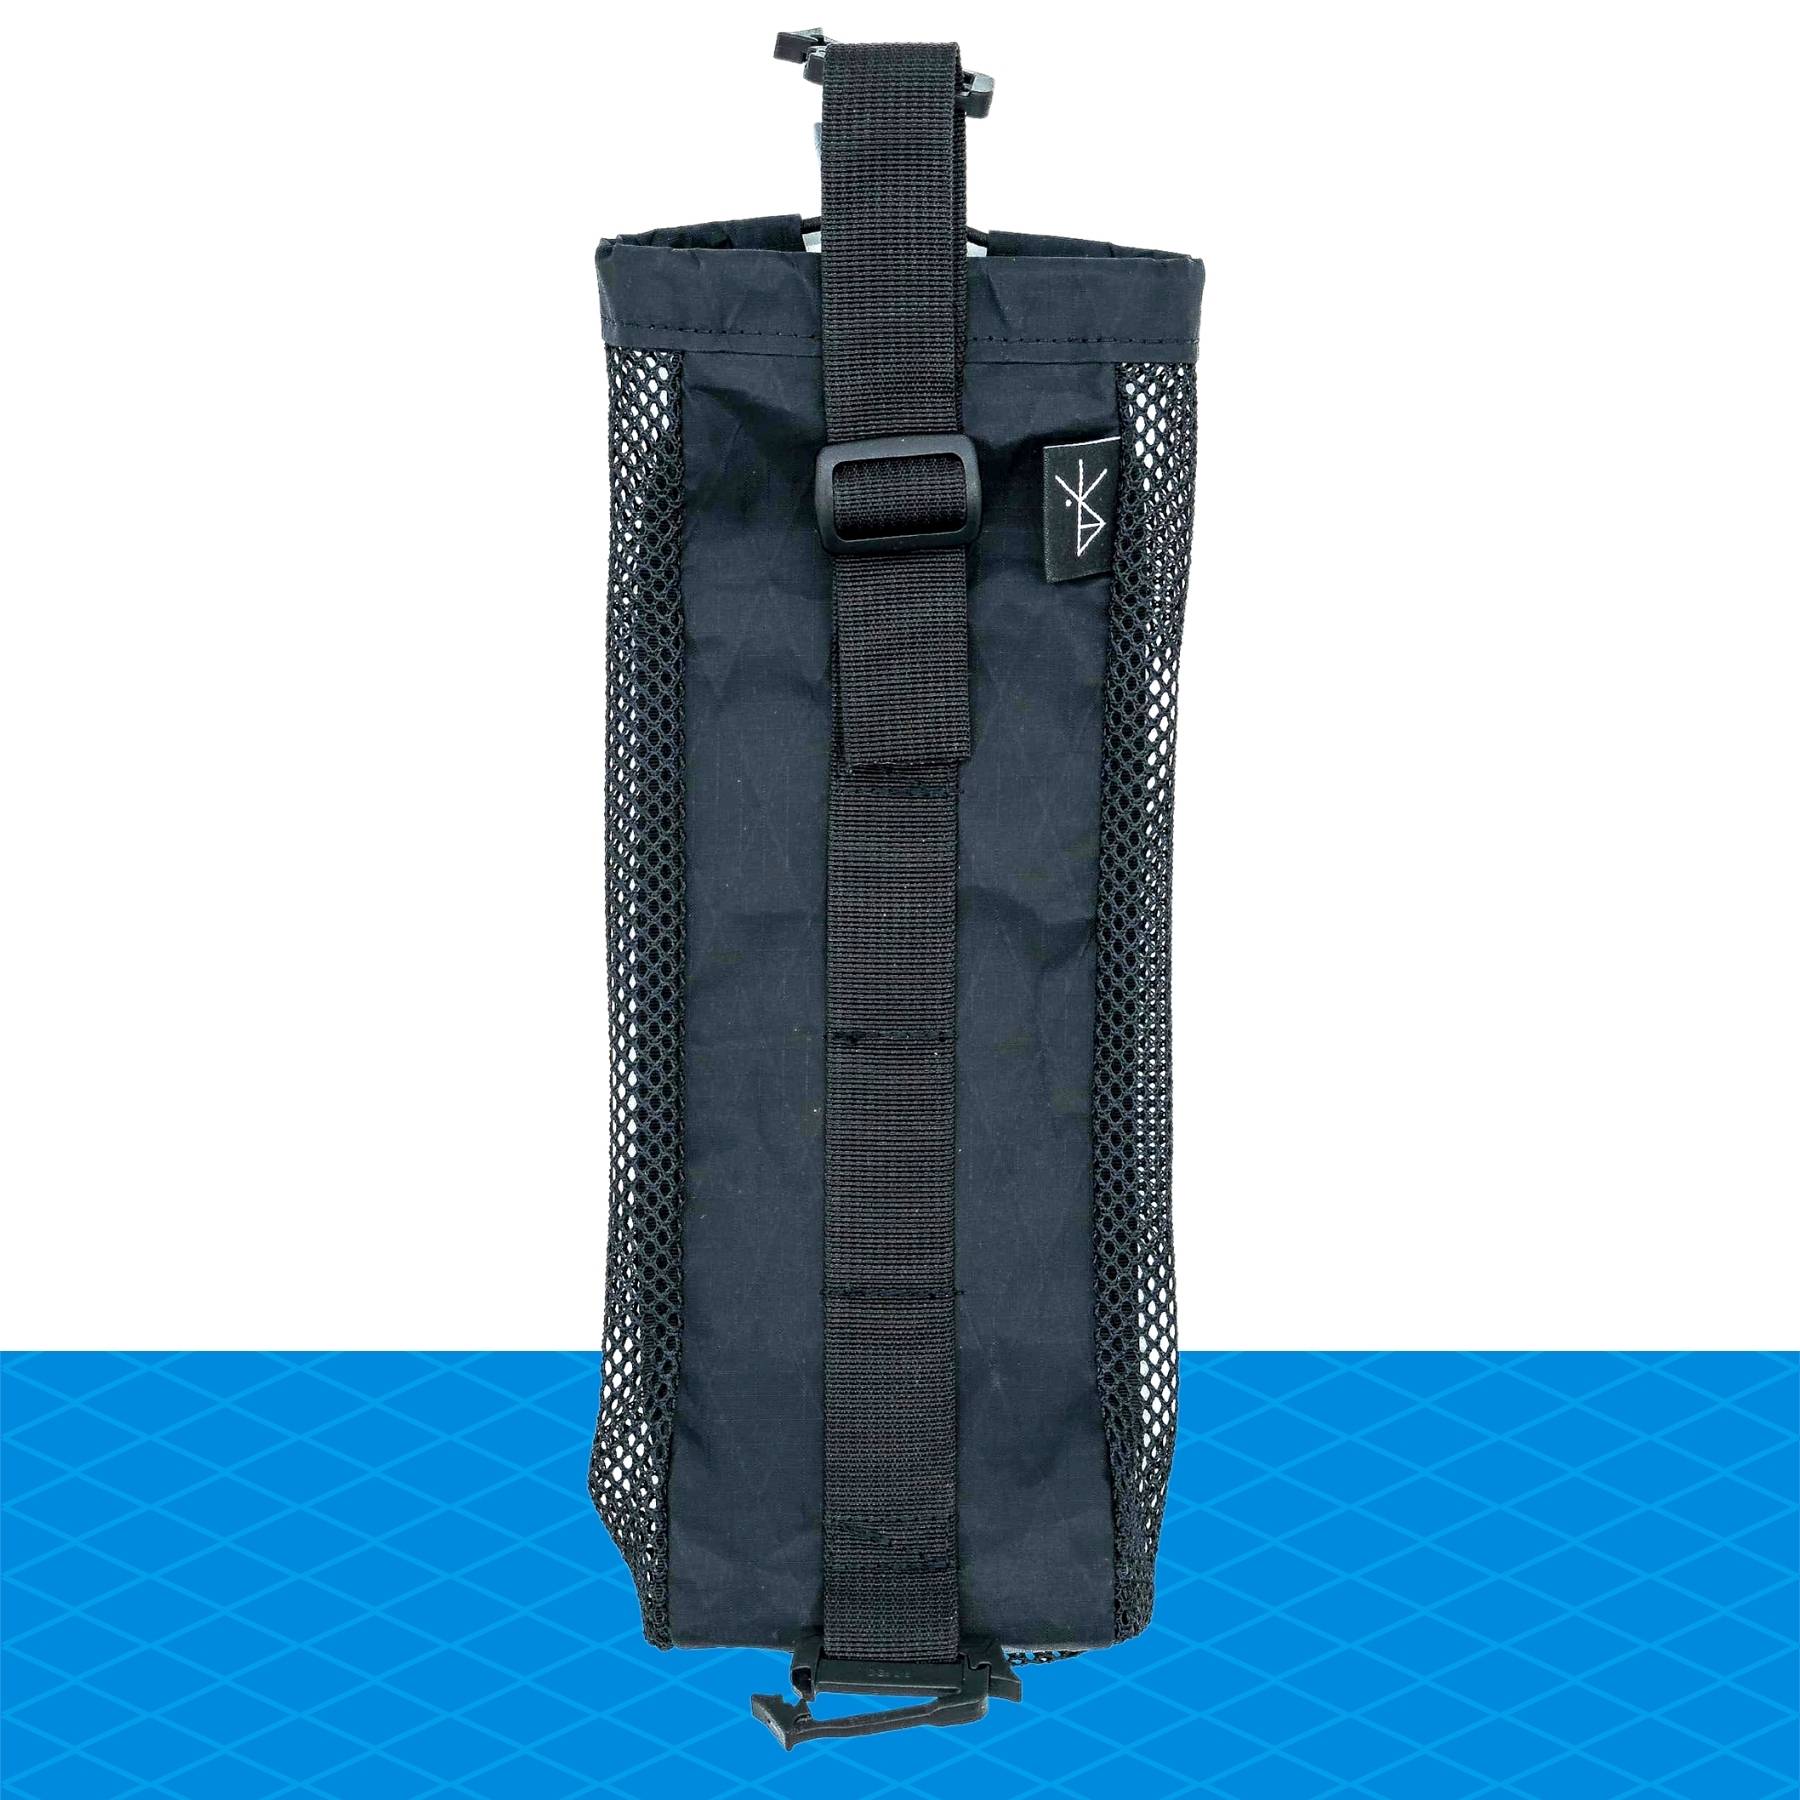 Water Bottle Carrier Bag Mesh Holder Adjustable Shoulder Strap for Hiking  Travel